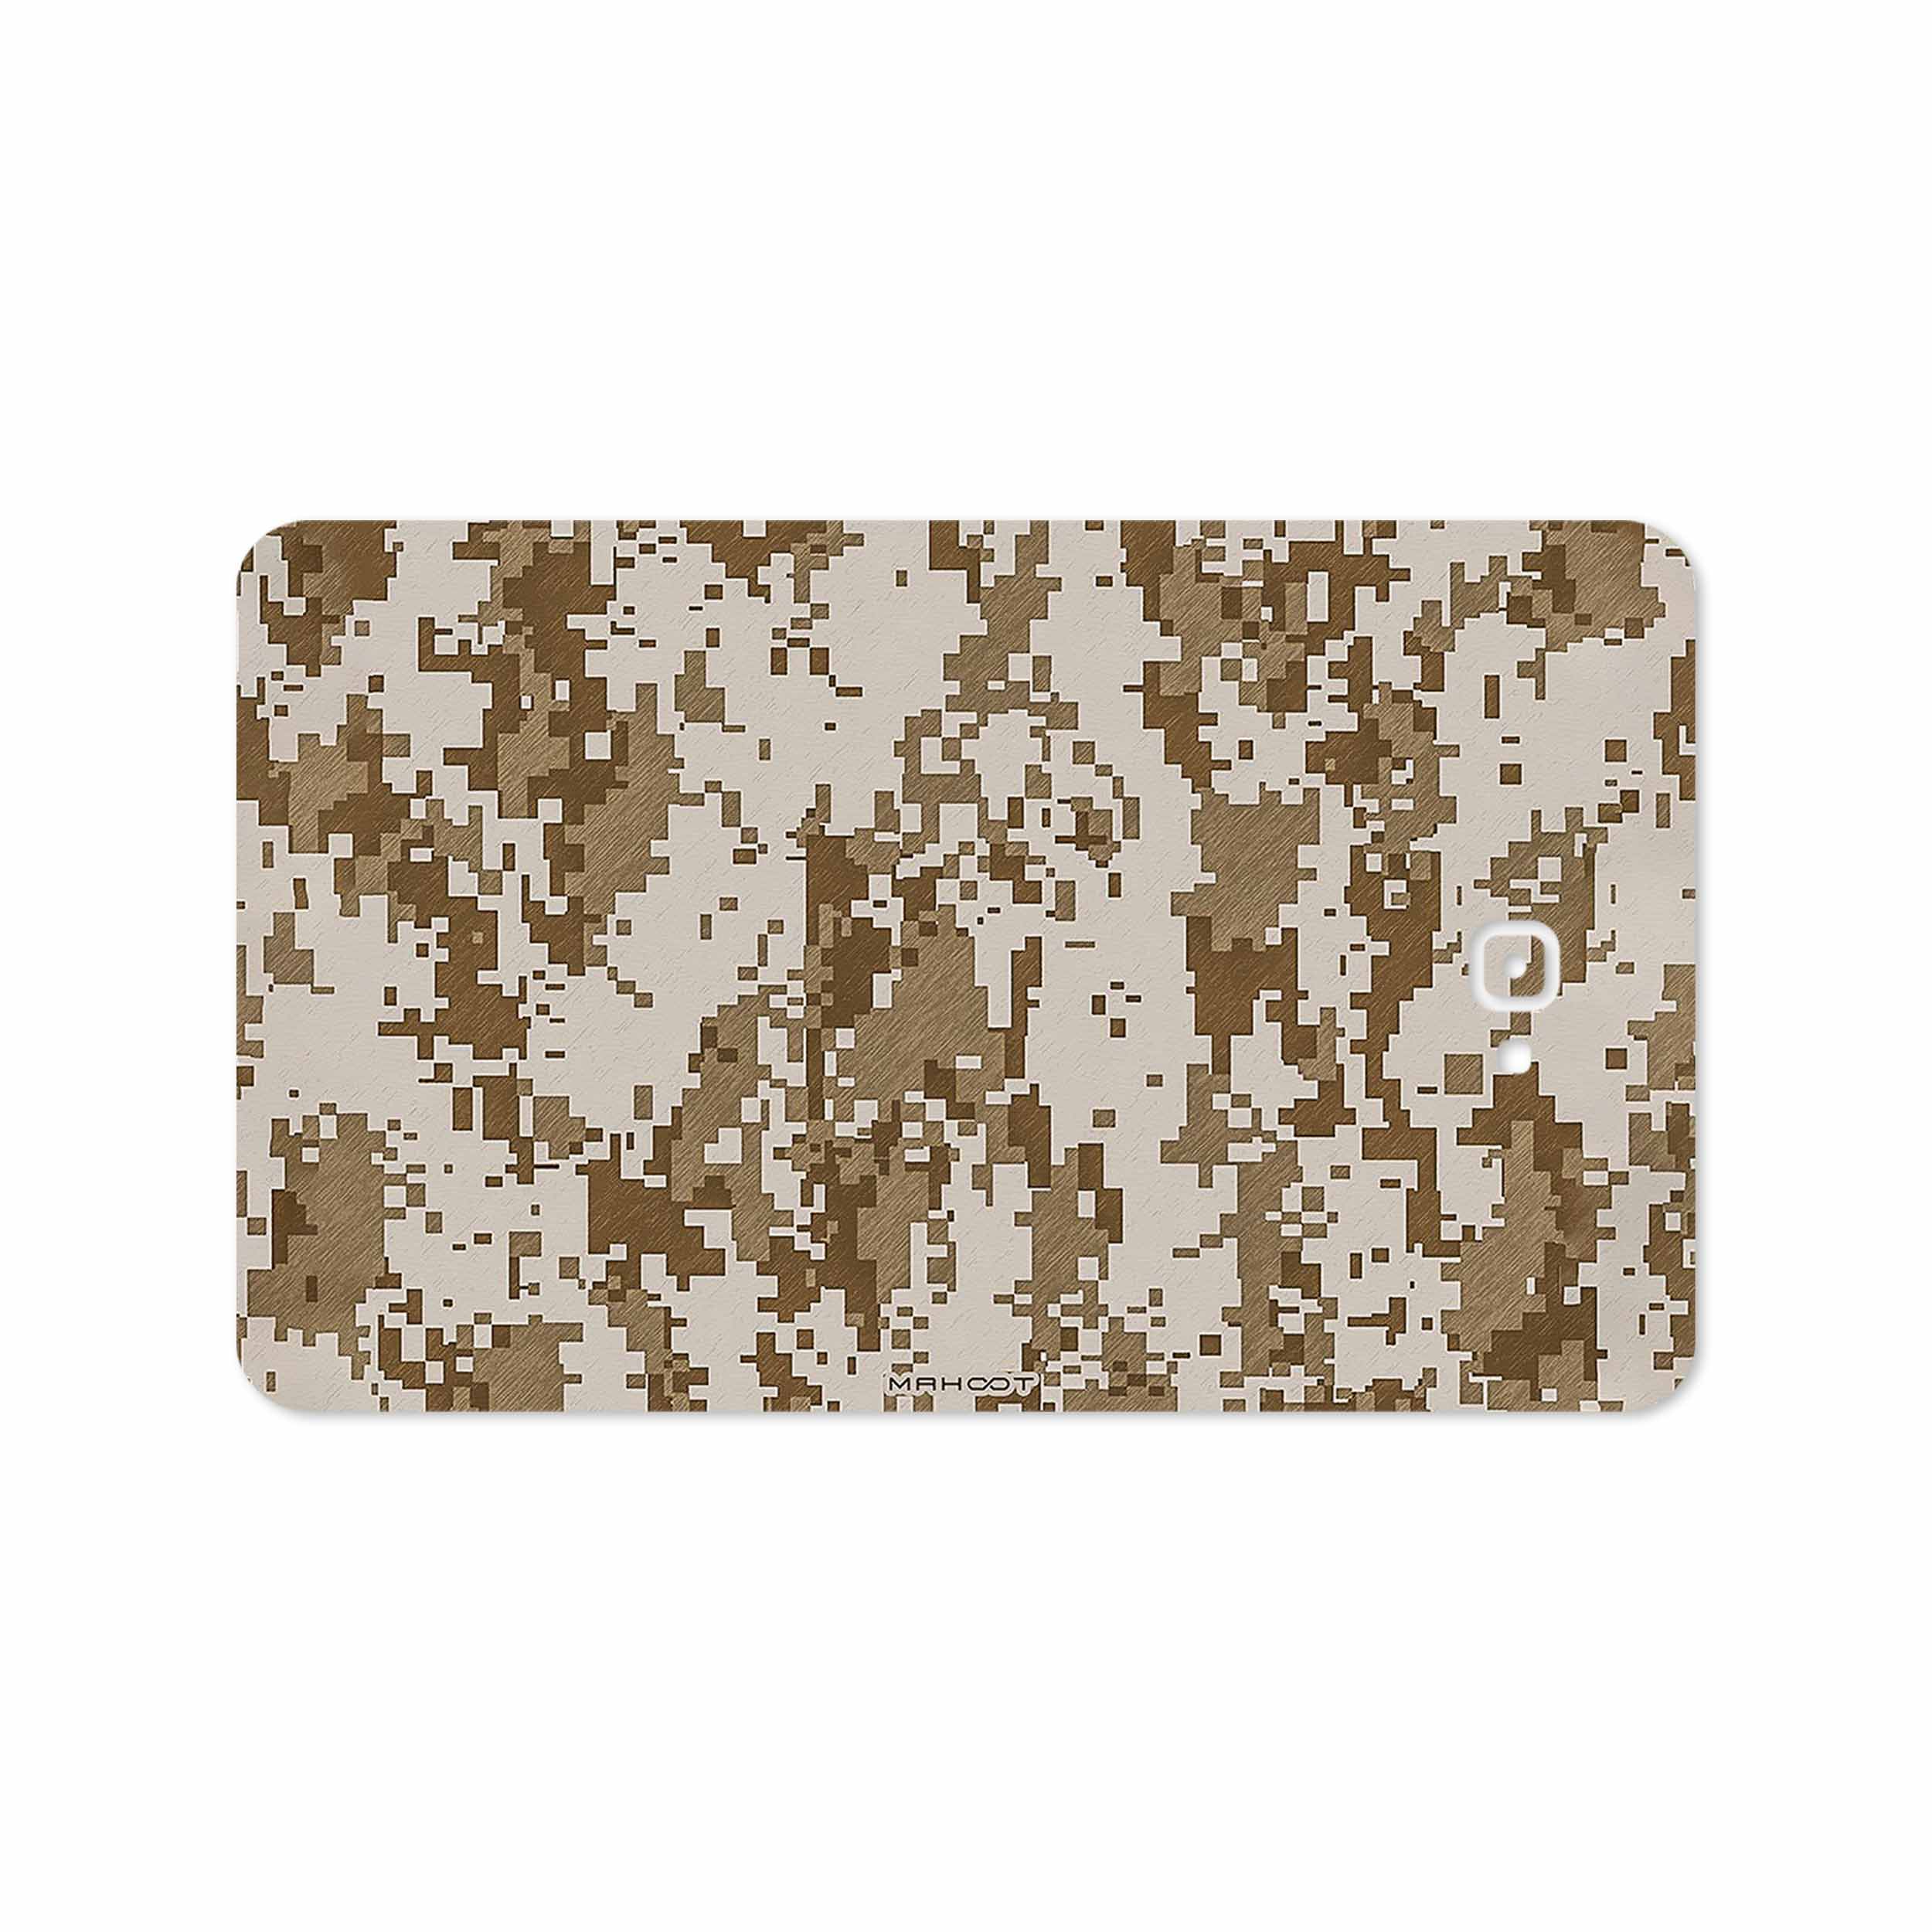 برچسب پوششی ماهوت مدل Army-Desert-Pixel مناسب برای تبلت سامسونگ Galaxy Tab A 10.1 2016 T585